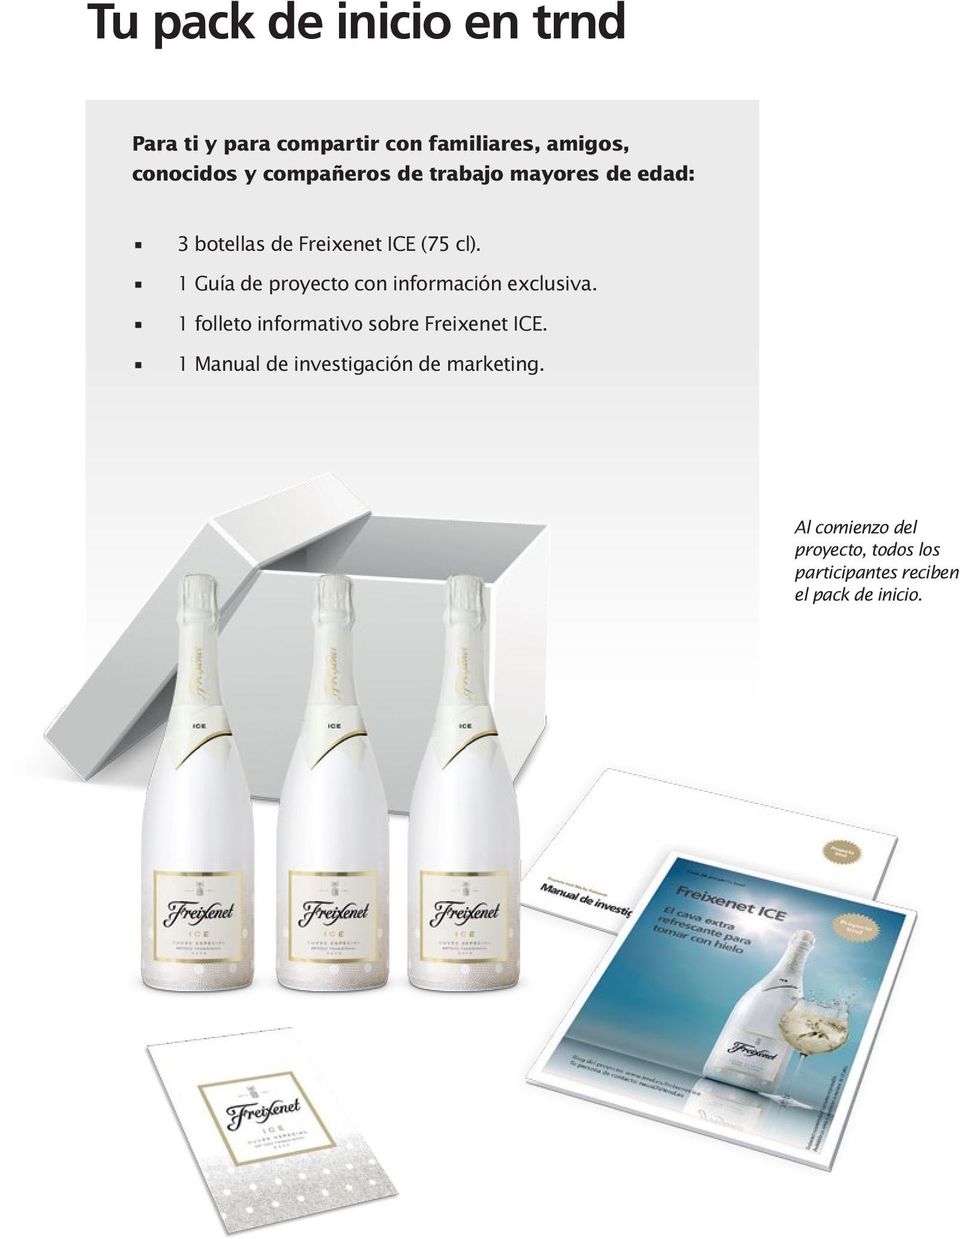 1 Guía de proyecto con información exclusiva. 1 folleto informativo sobre Freixenet ICE.